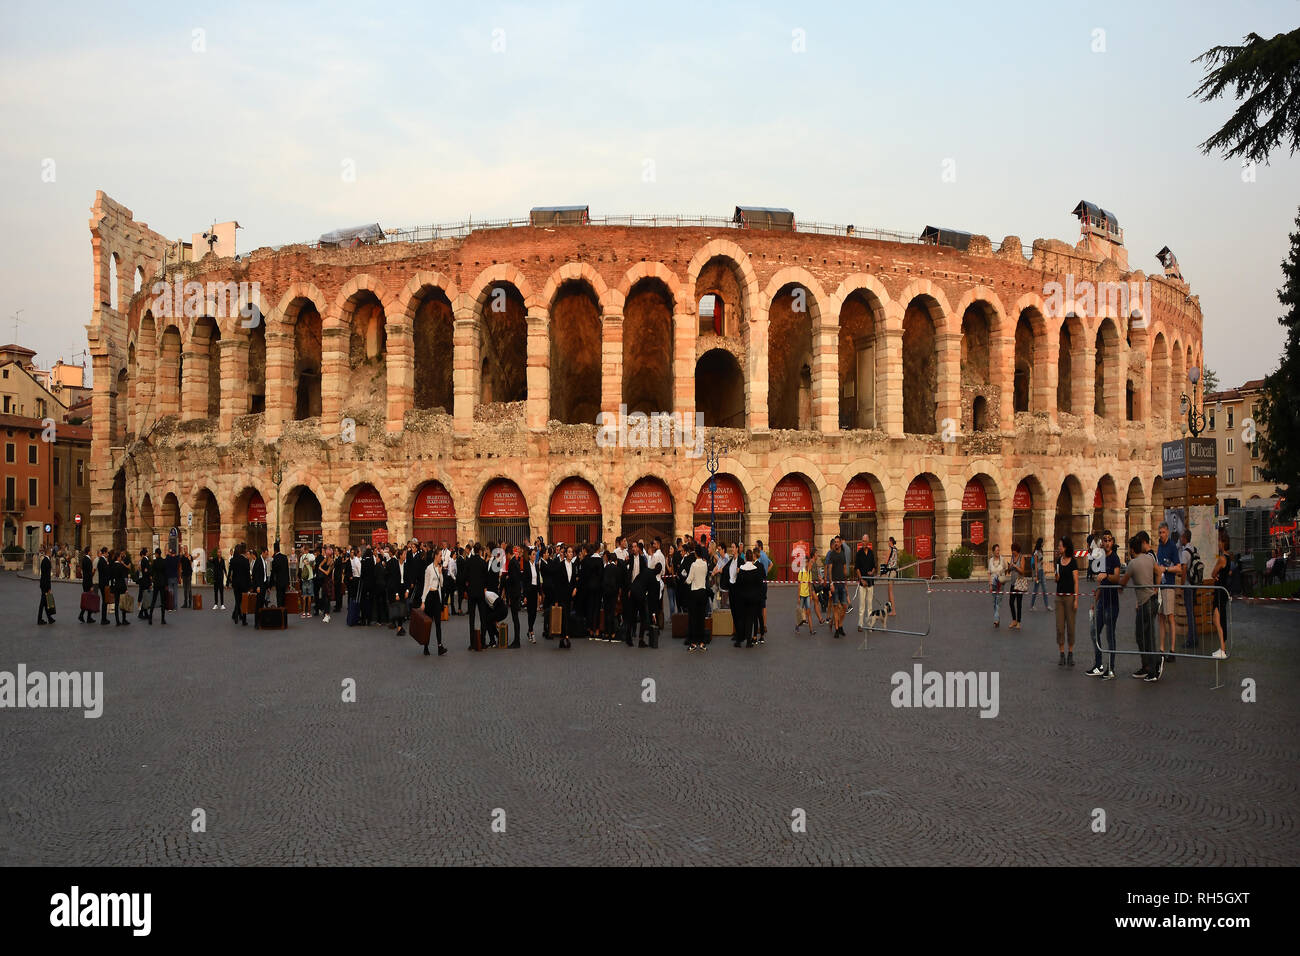 Die Leute am Abend auf der Piazza Bra Verona vor dem römischen Amphitheater Arena di Verona - Italien. Stockfoto